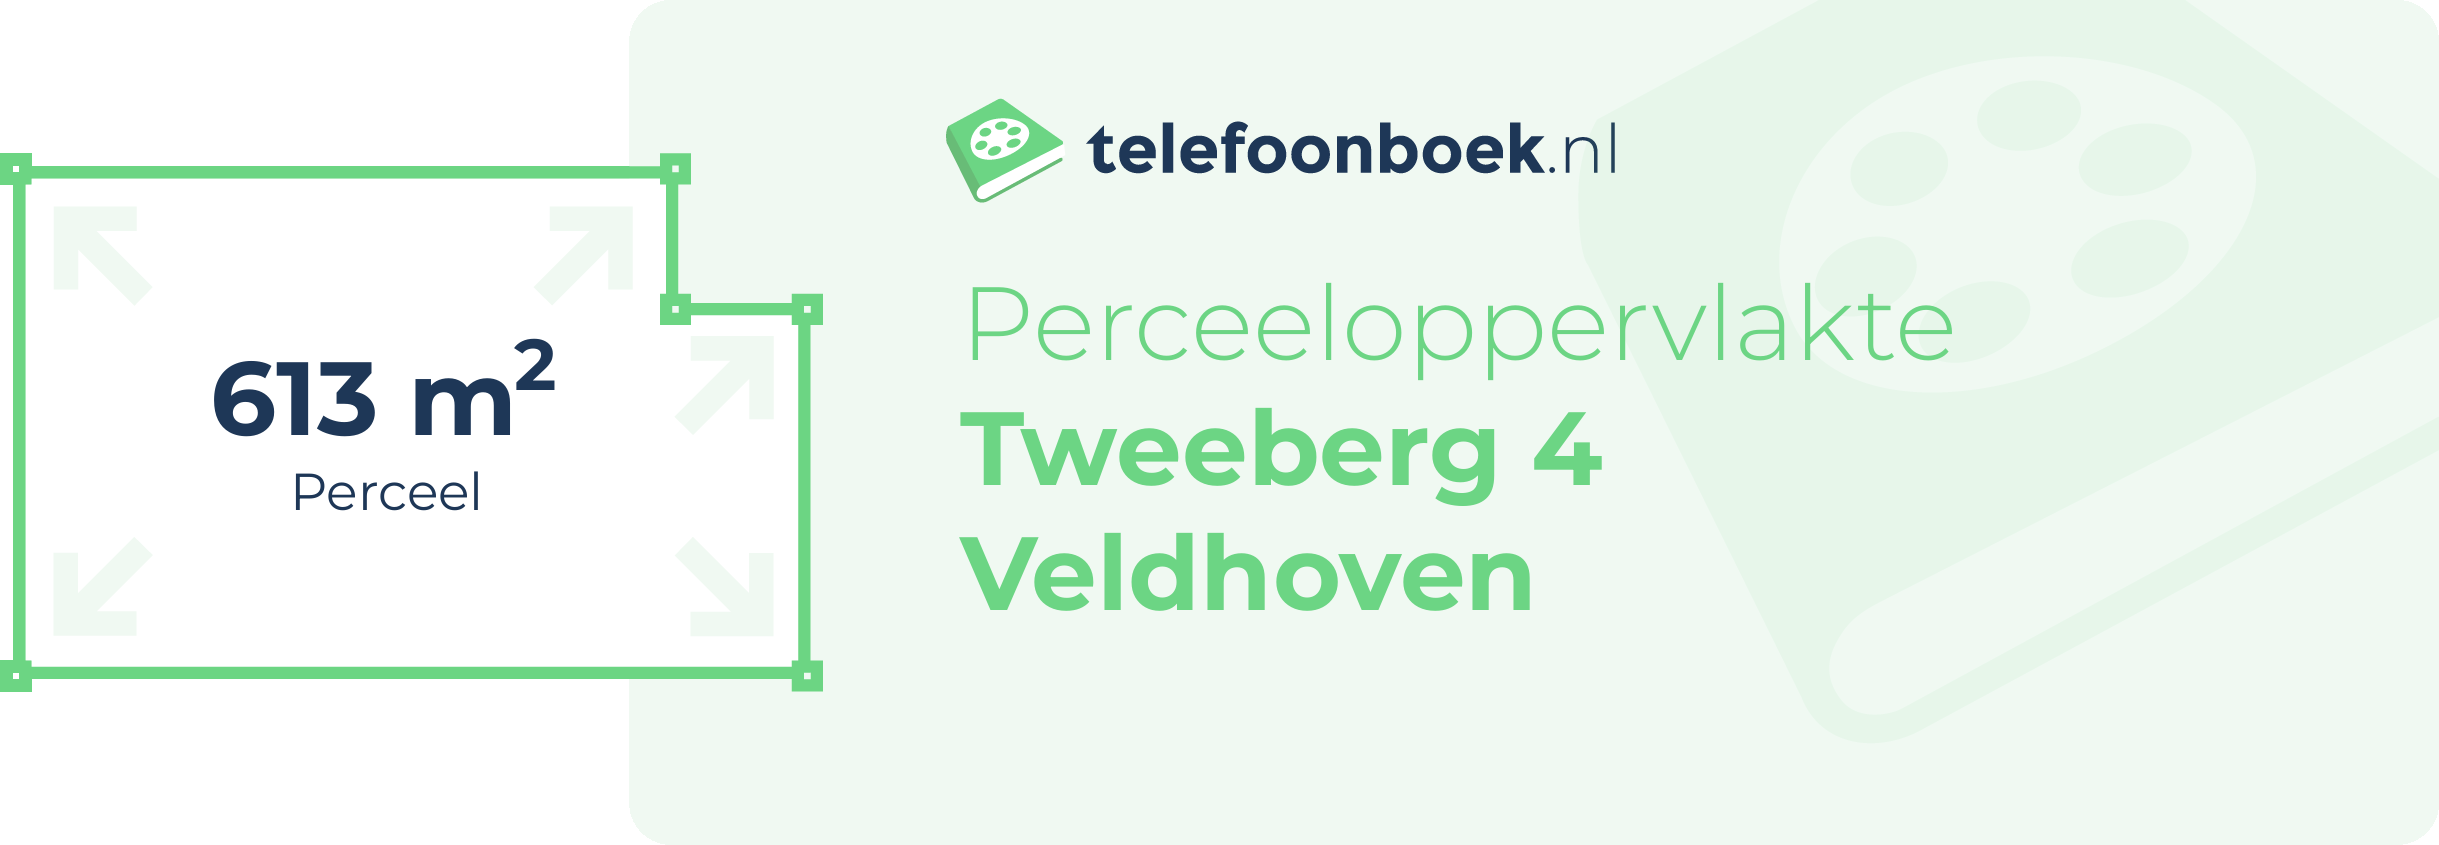 Perceeloppervlakte Tweeberg 4 Veldhoven